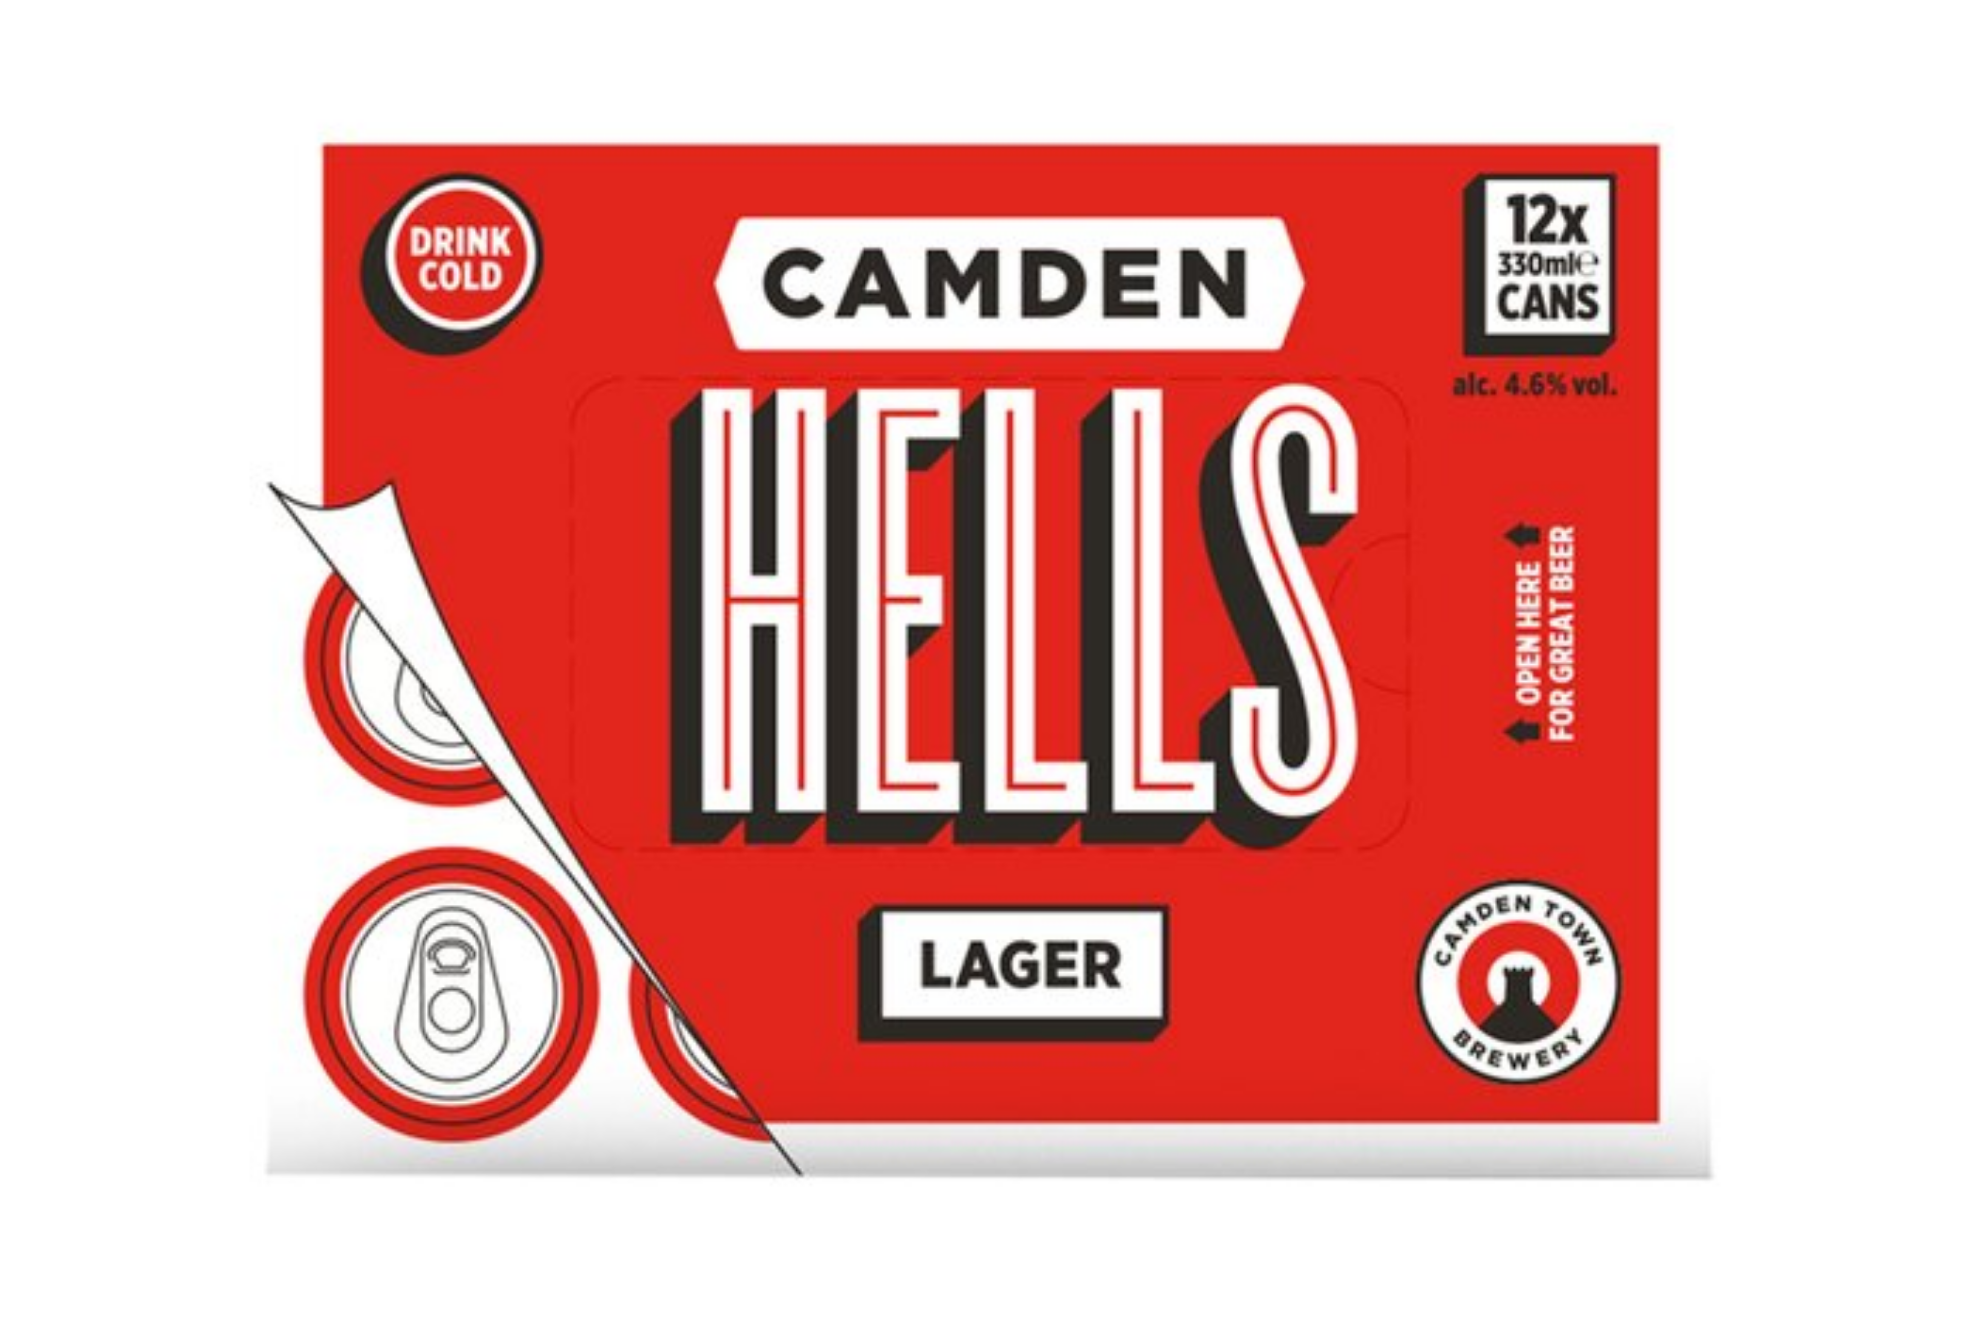 Camden Hells 12x330ml Cans